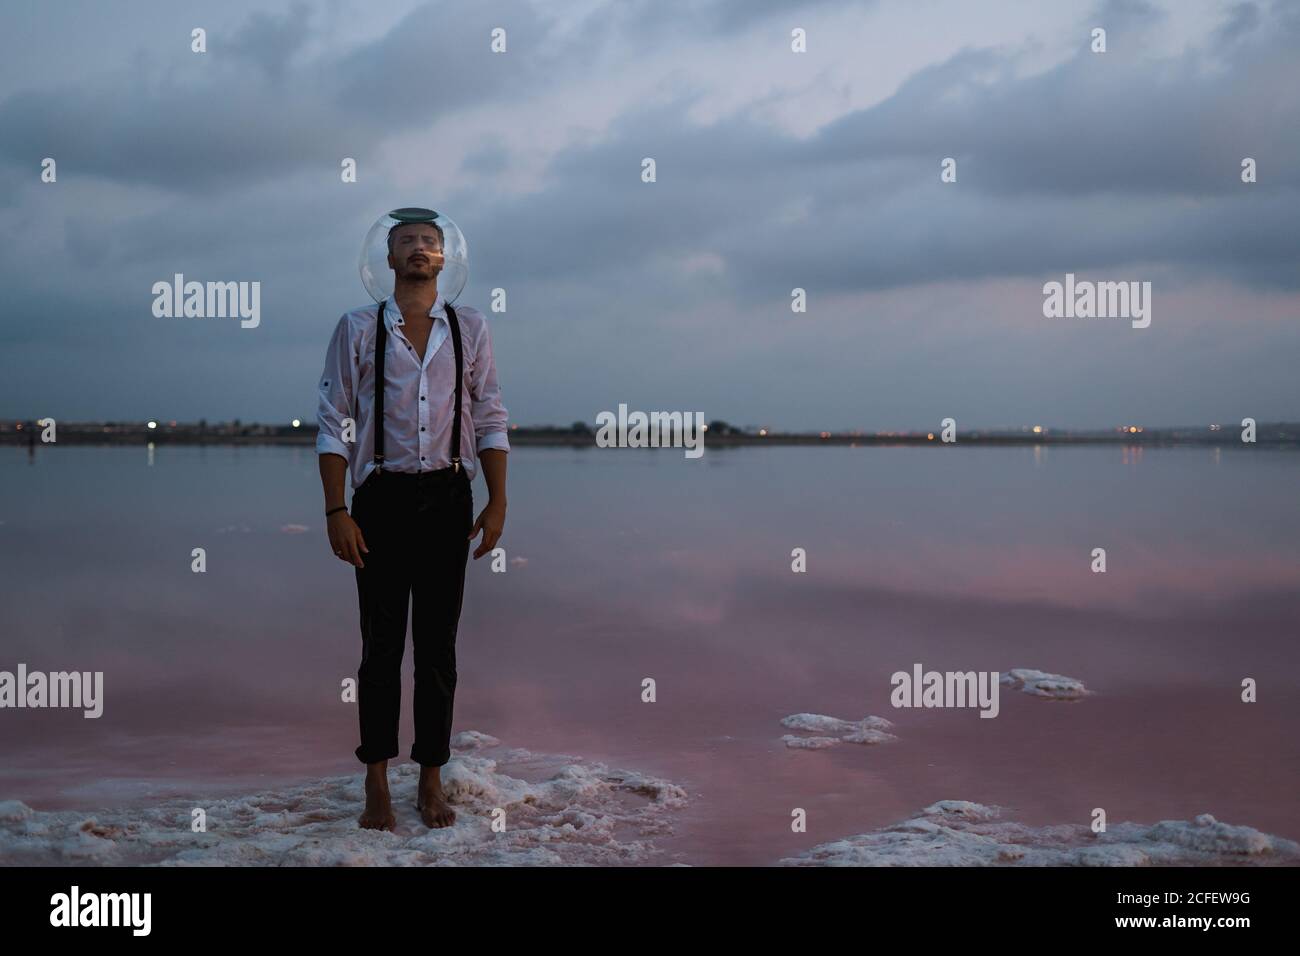 Nachdenklicher Mann mit geschlossenen Augen im nassen Hemd mit leerem Aquarium auf dem Kopf stehend und kontemplierend durch stilles Meer in Dämmerung Stockfoto